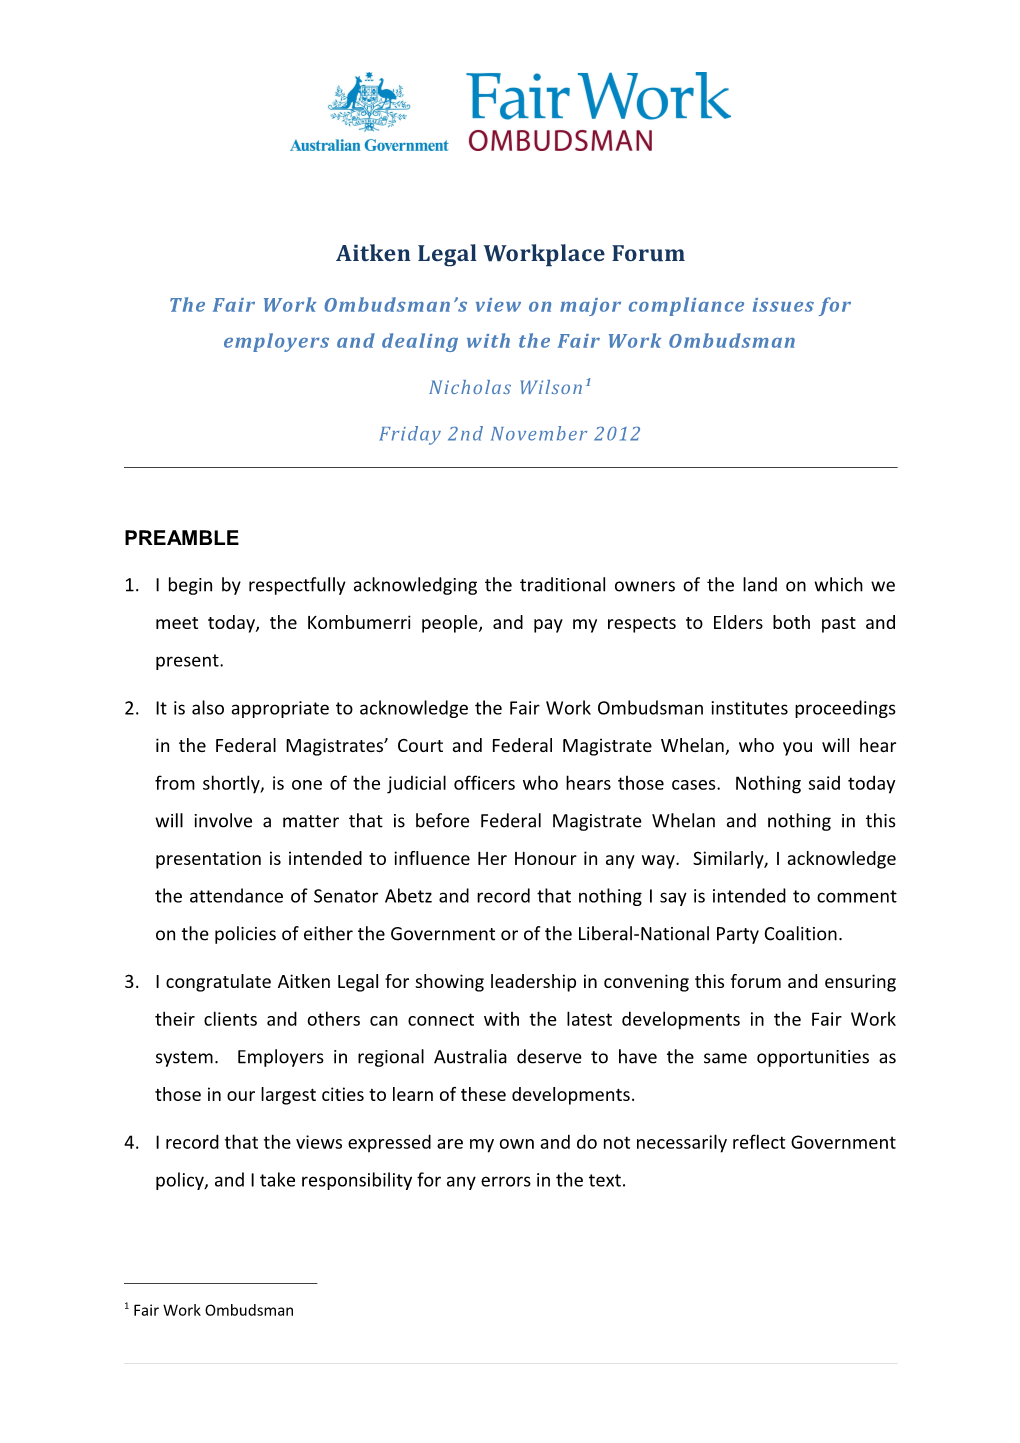 Aitken Legal Workplace Forum Speech 2 November 2012